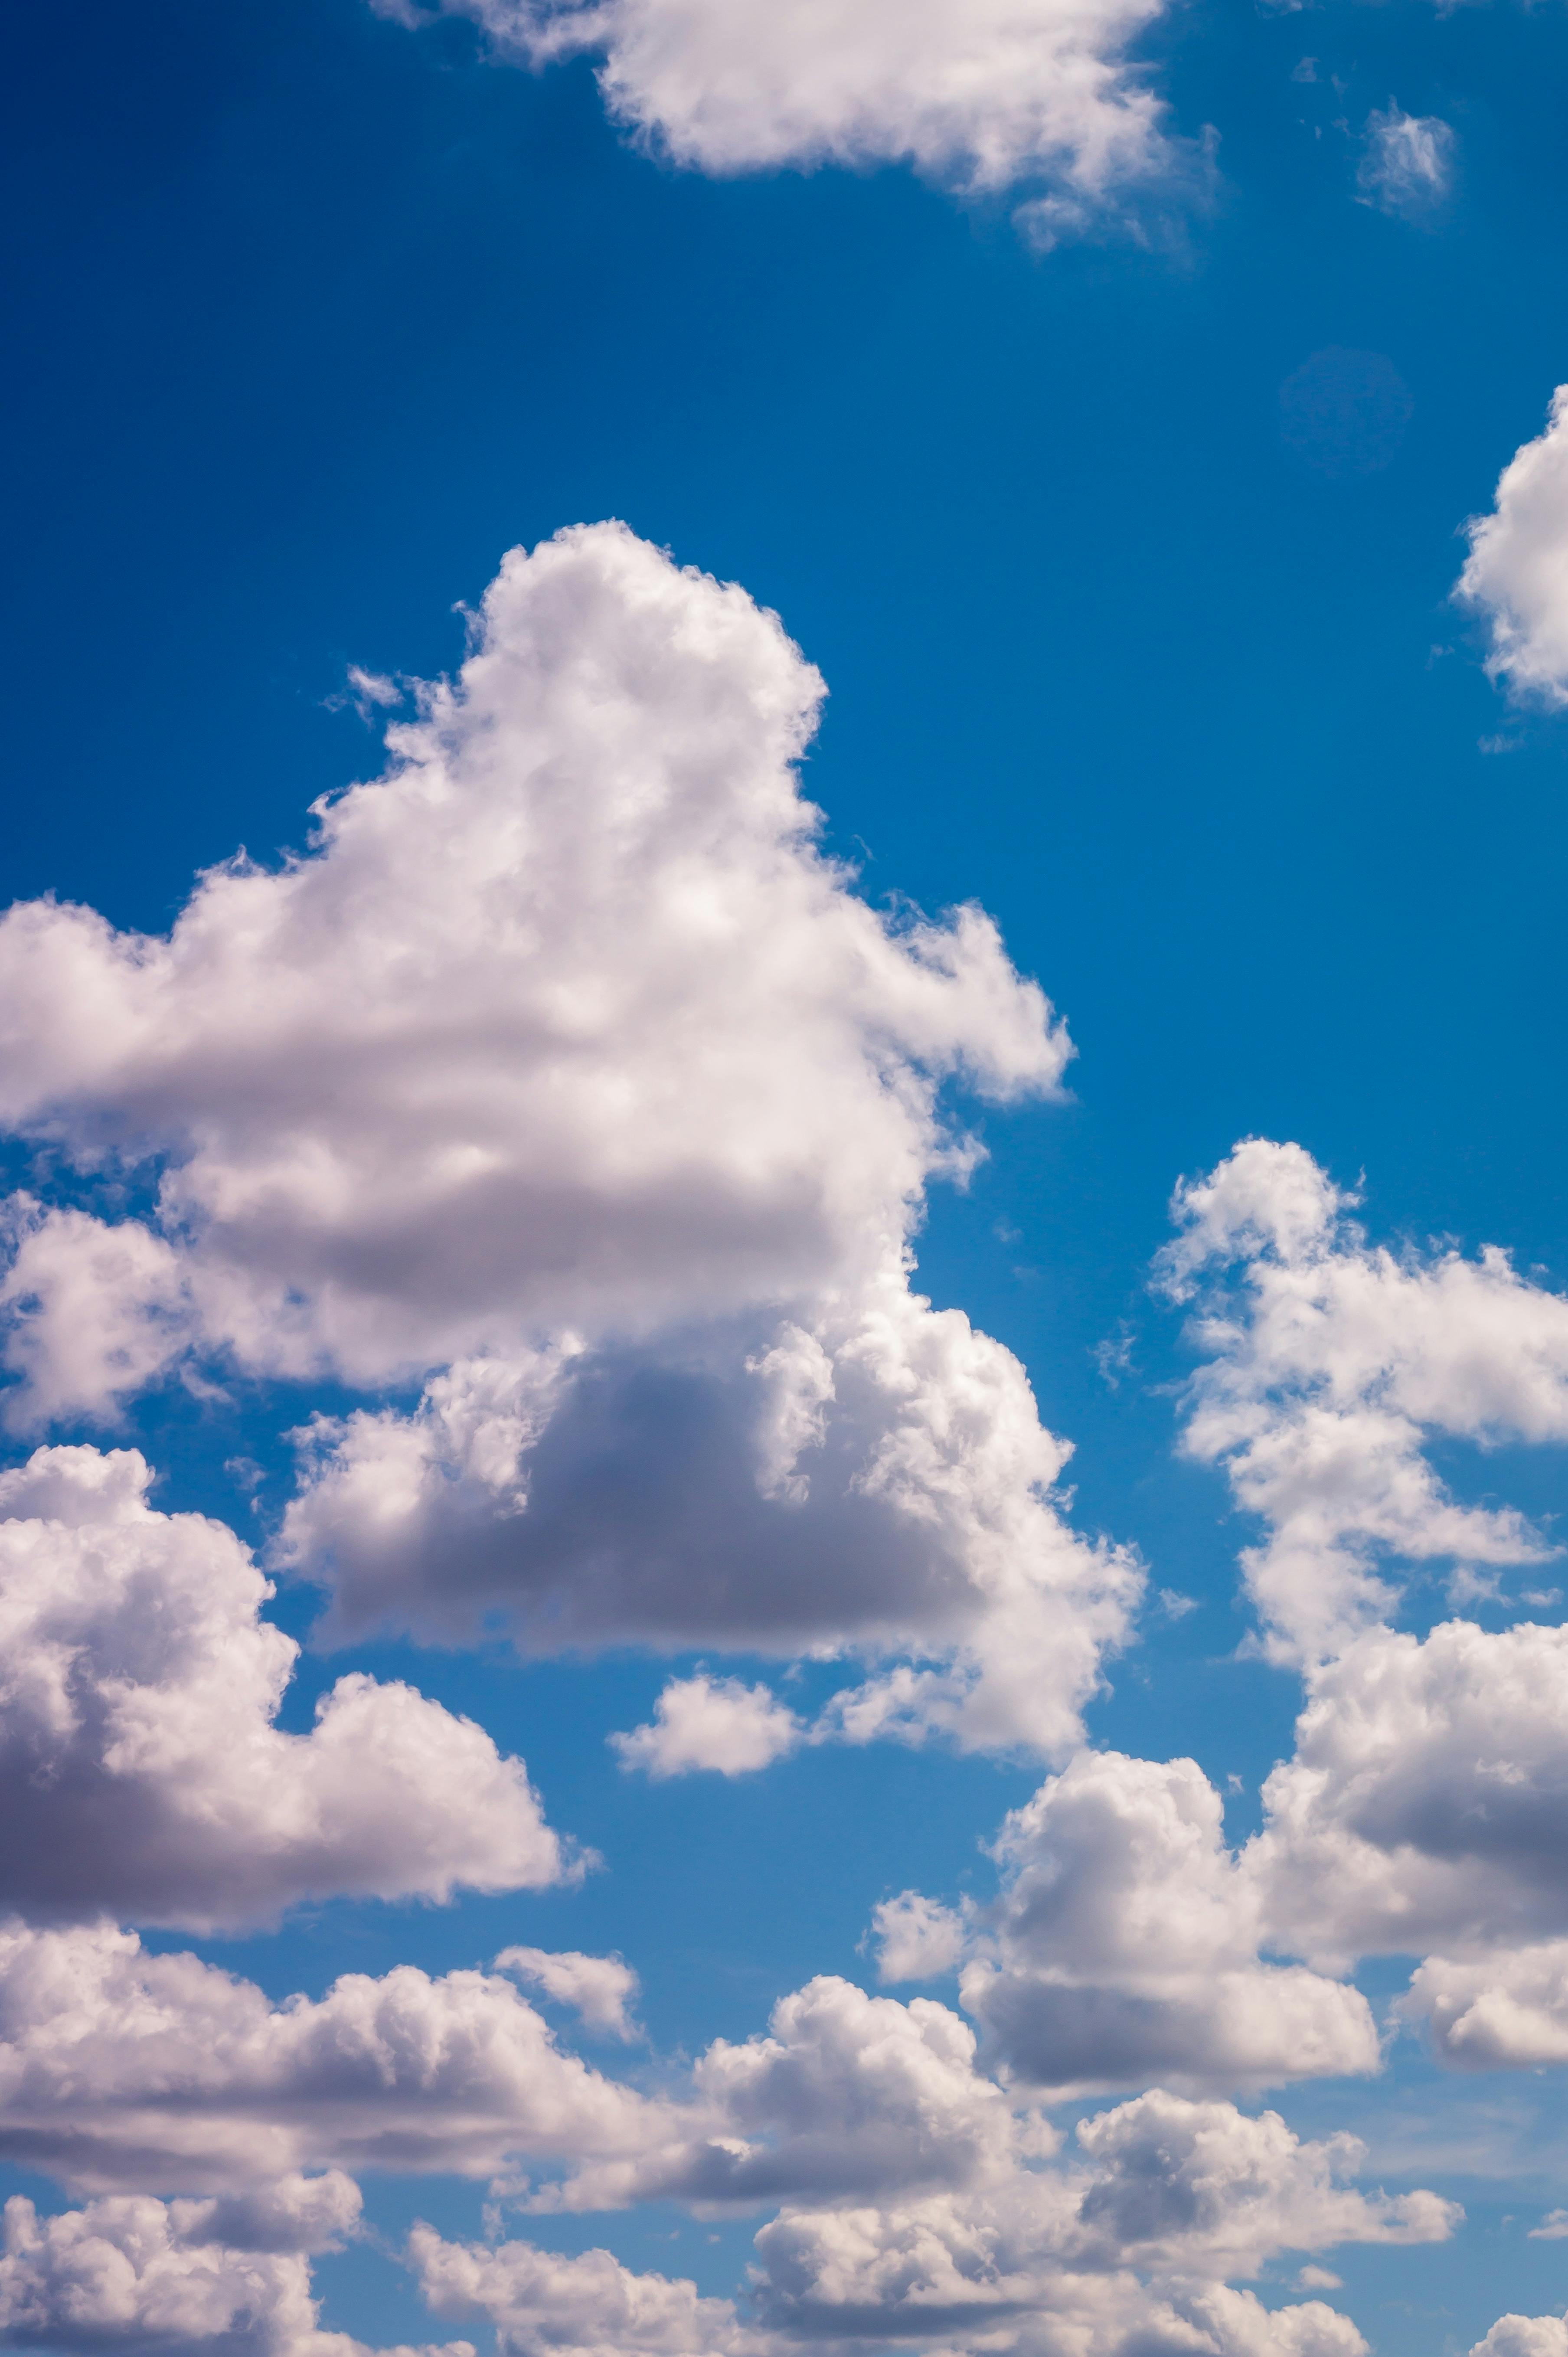 500+ Incredible Cloud Photos · Pexels · Free Stock Photos